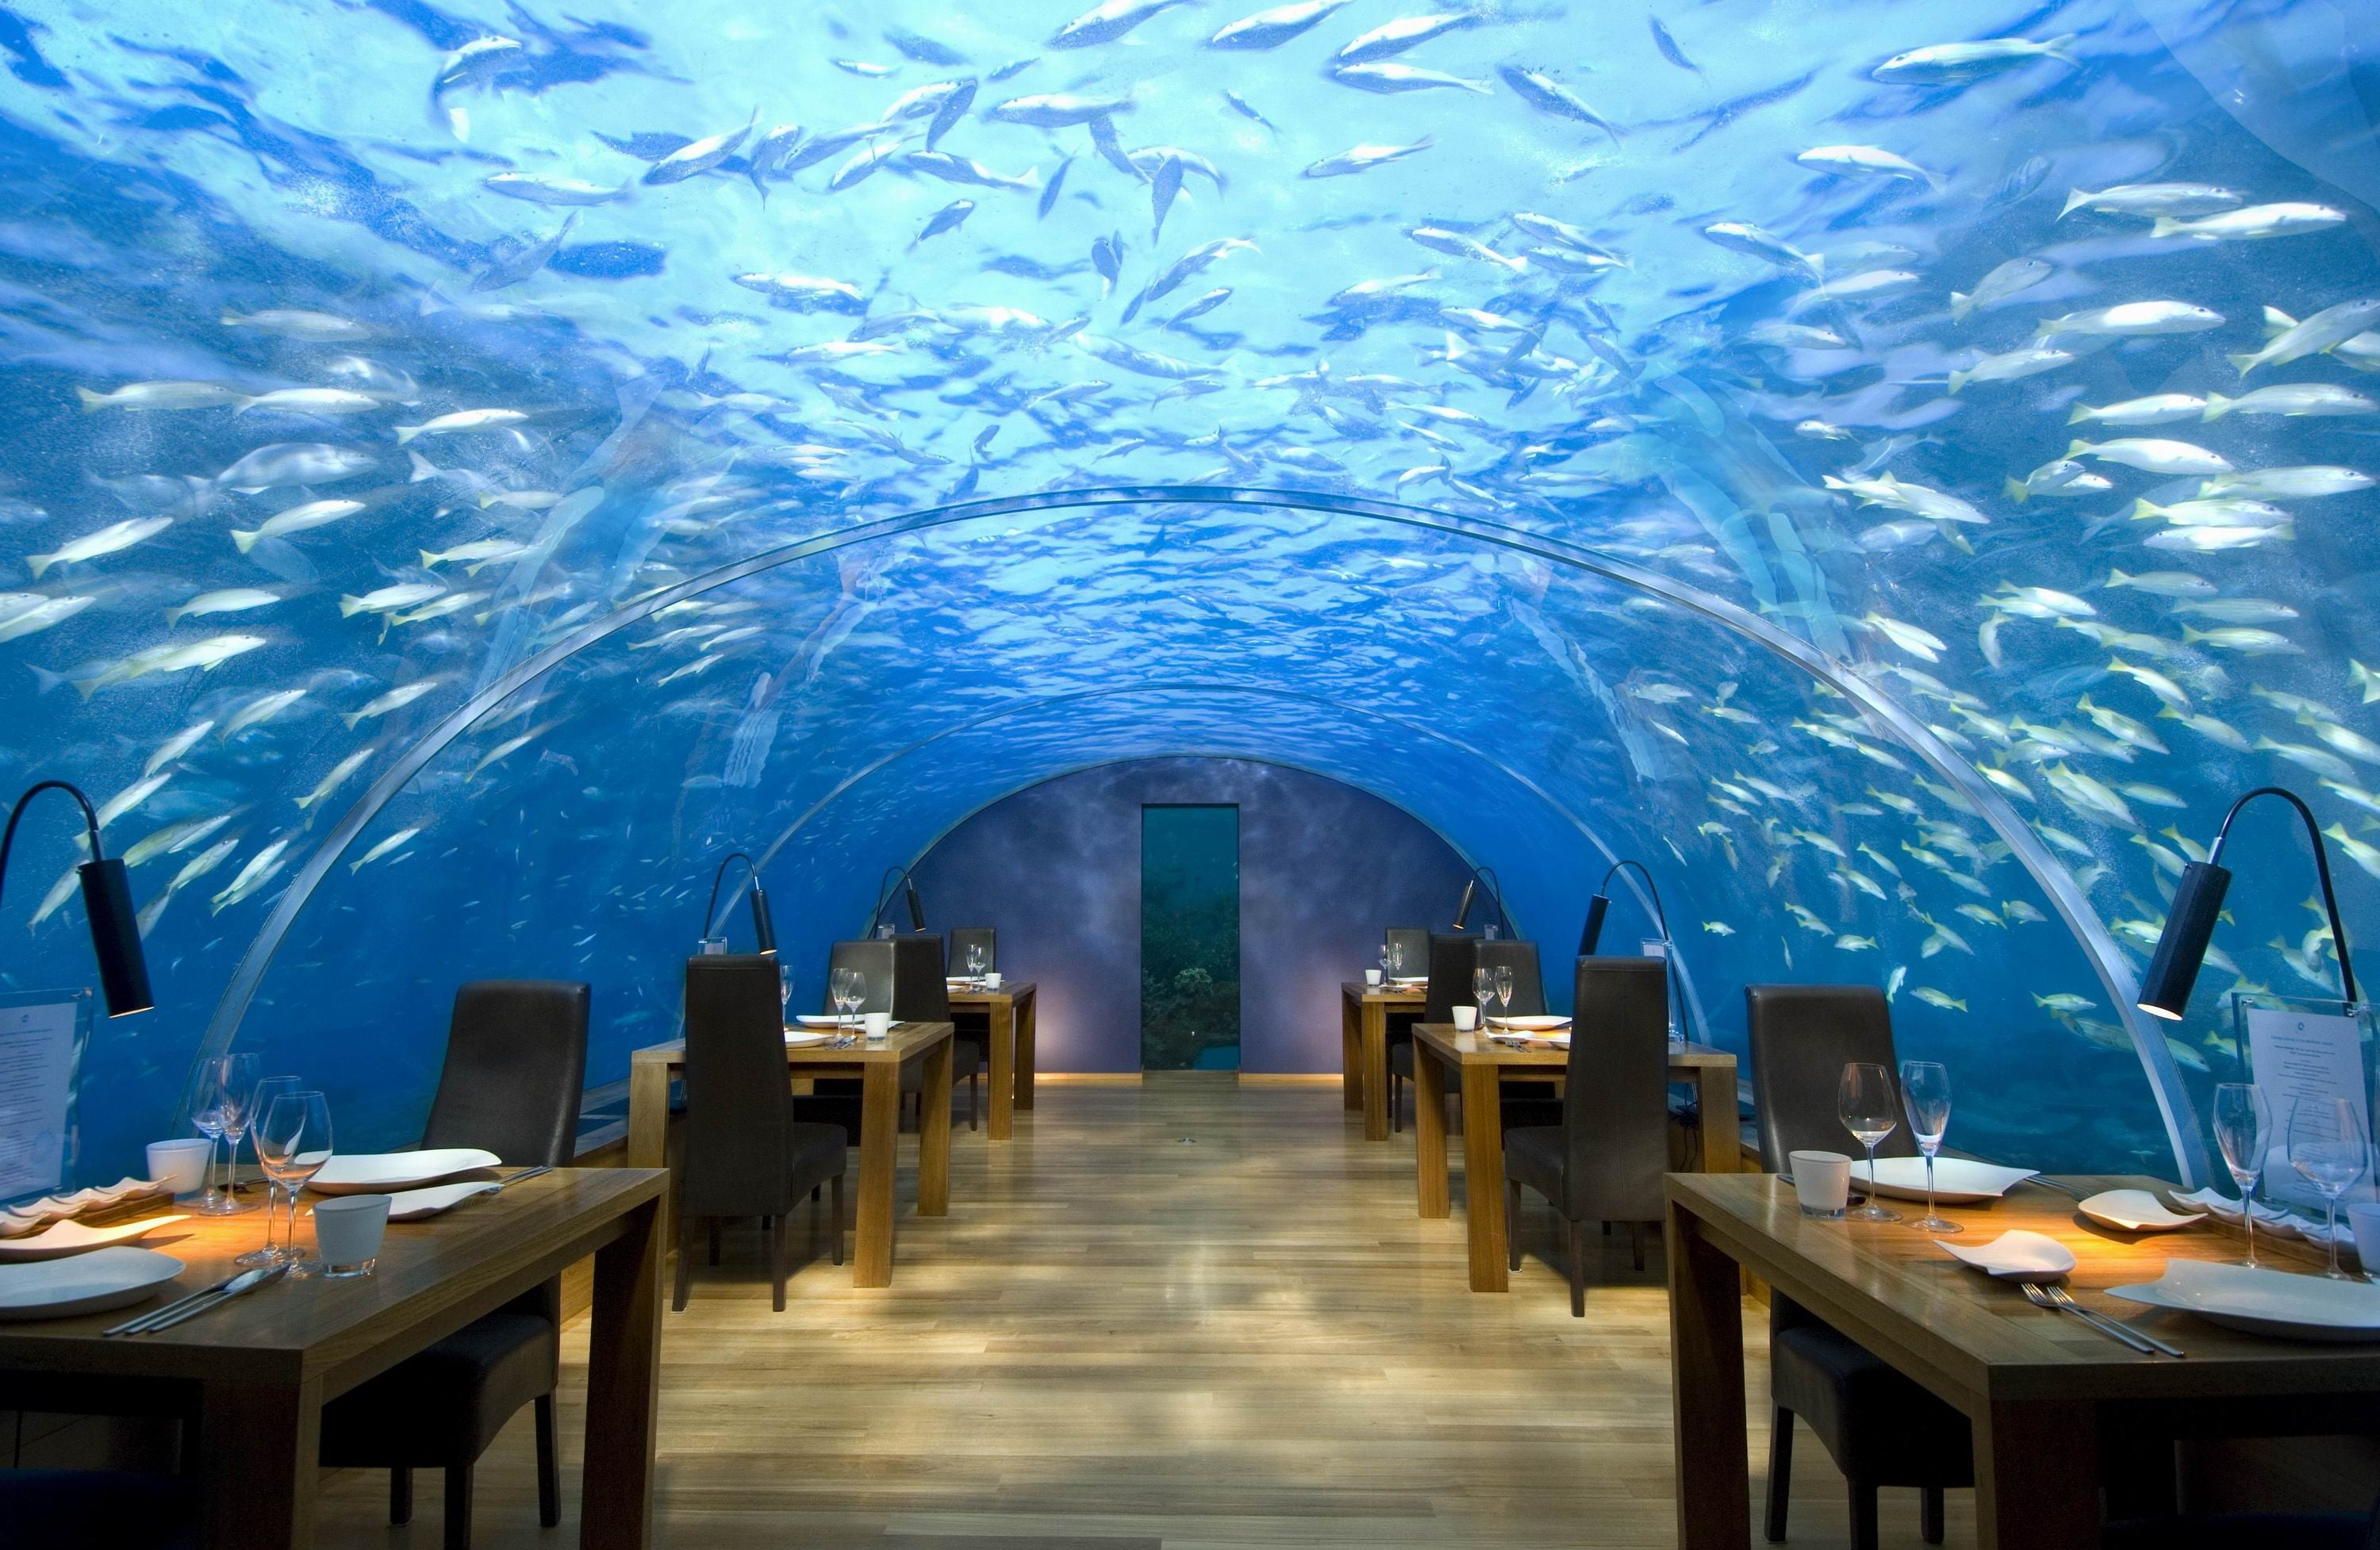 empty underwater restaurant during daytime